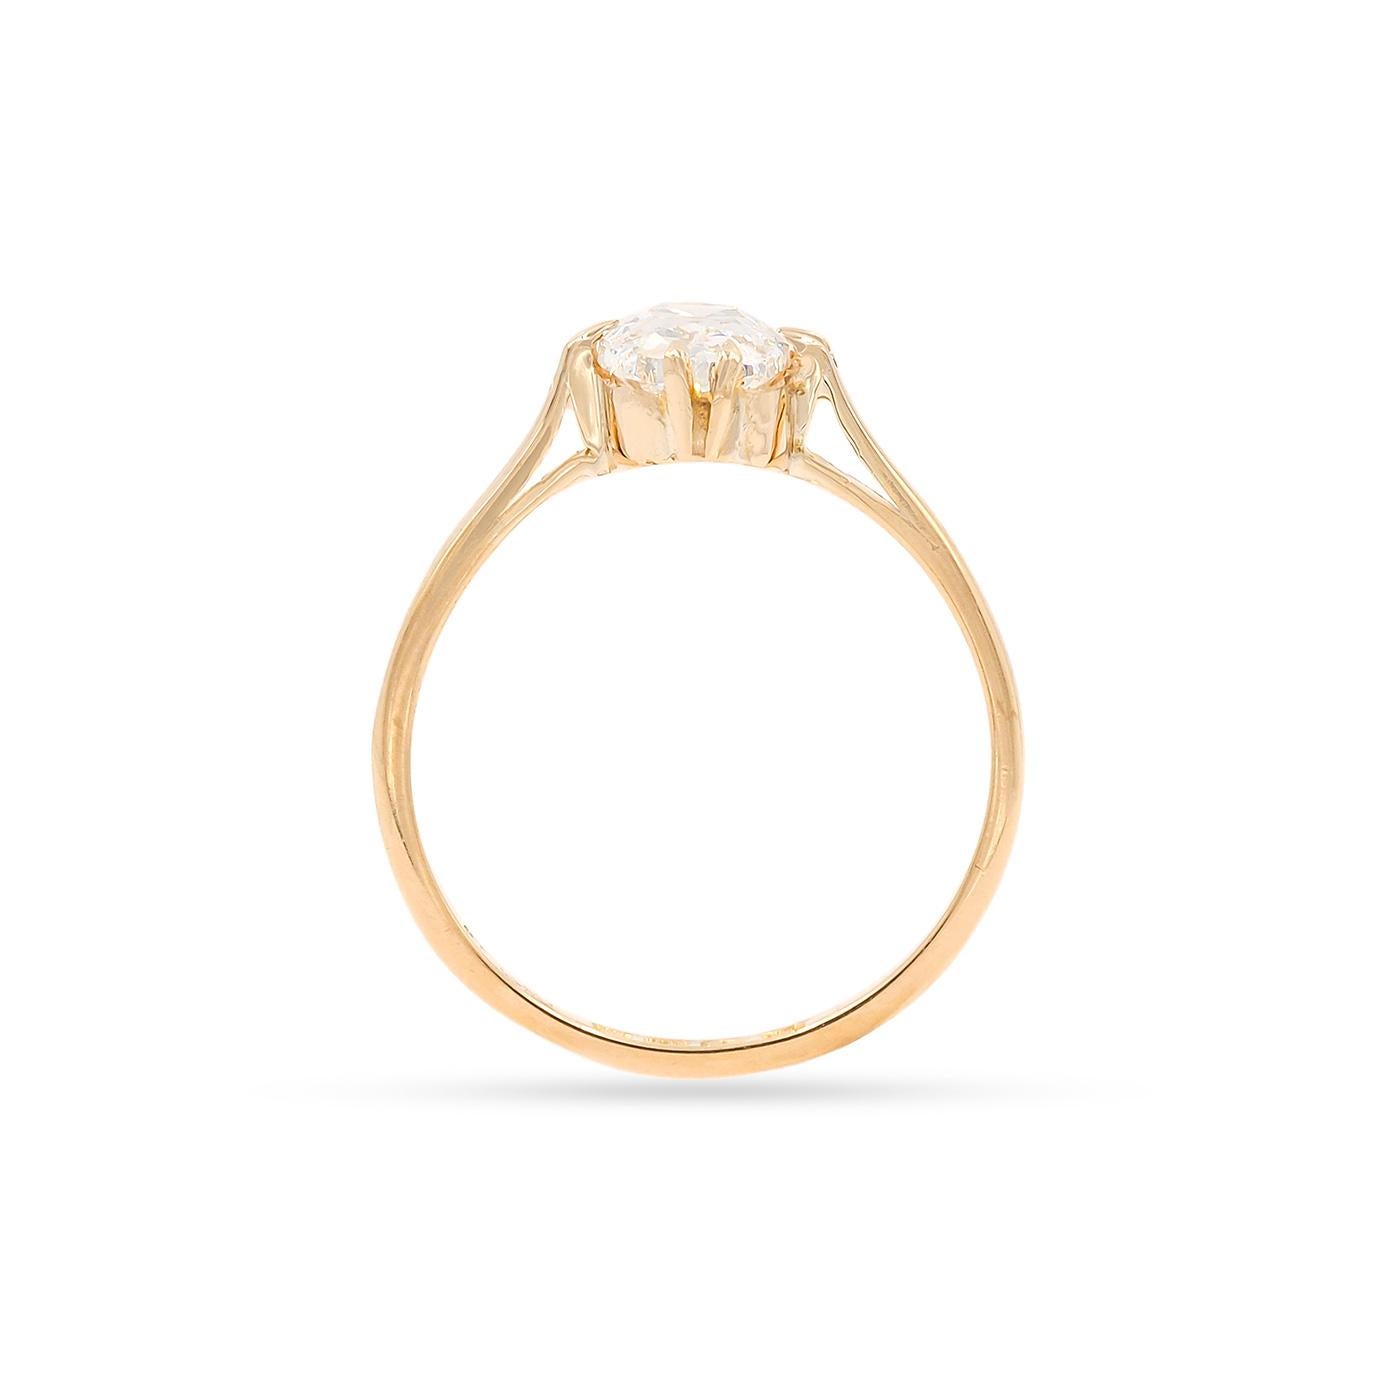 0.8 carat oval diamond ring